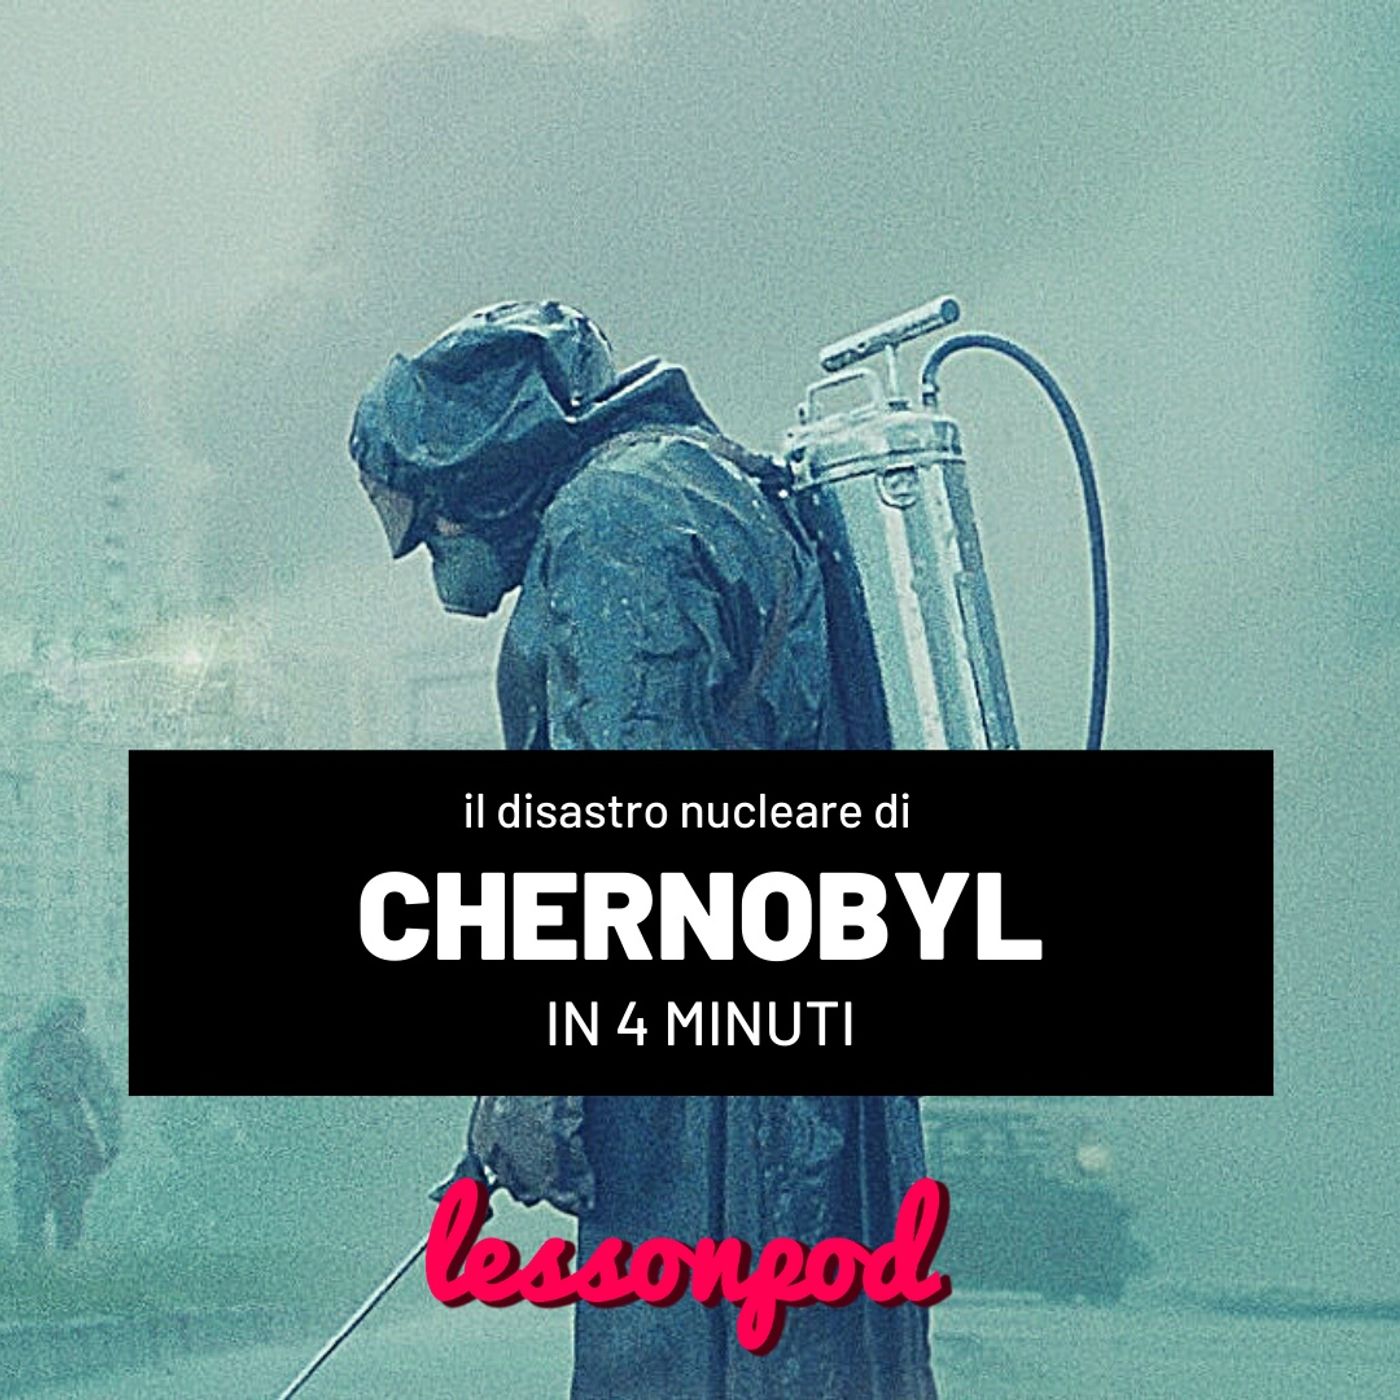 Il disastro nucleare di Chernobyl in 4 minuti